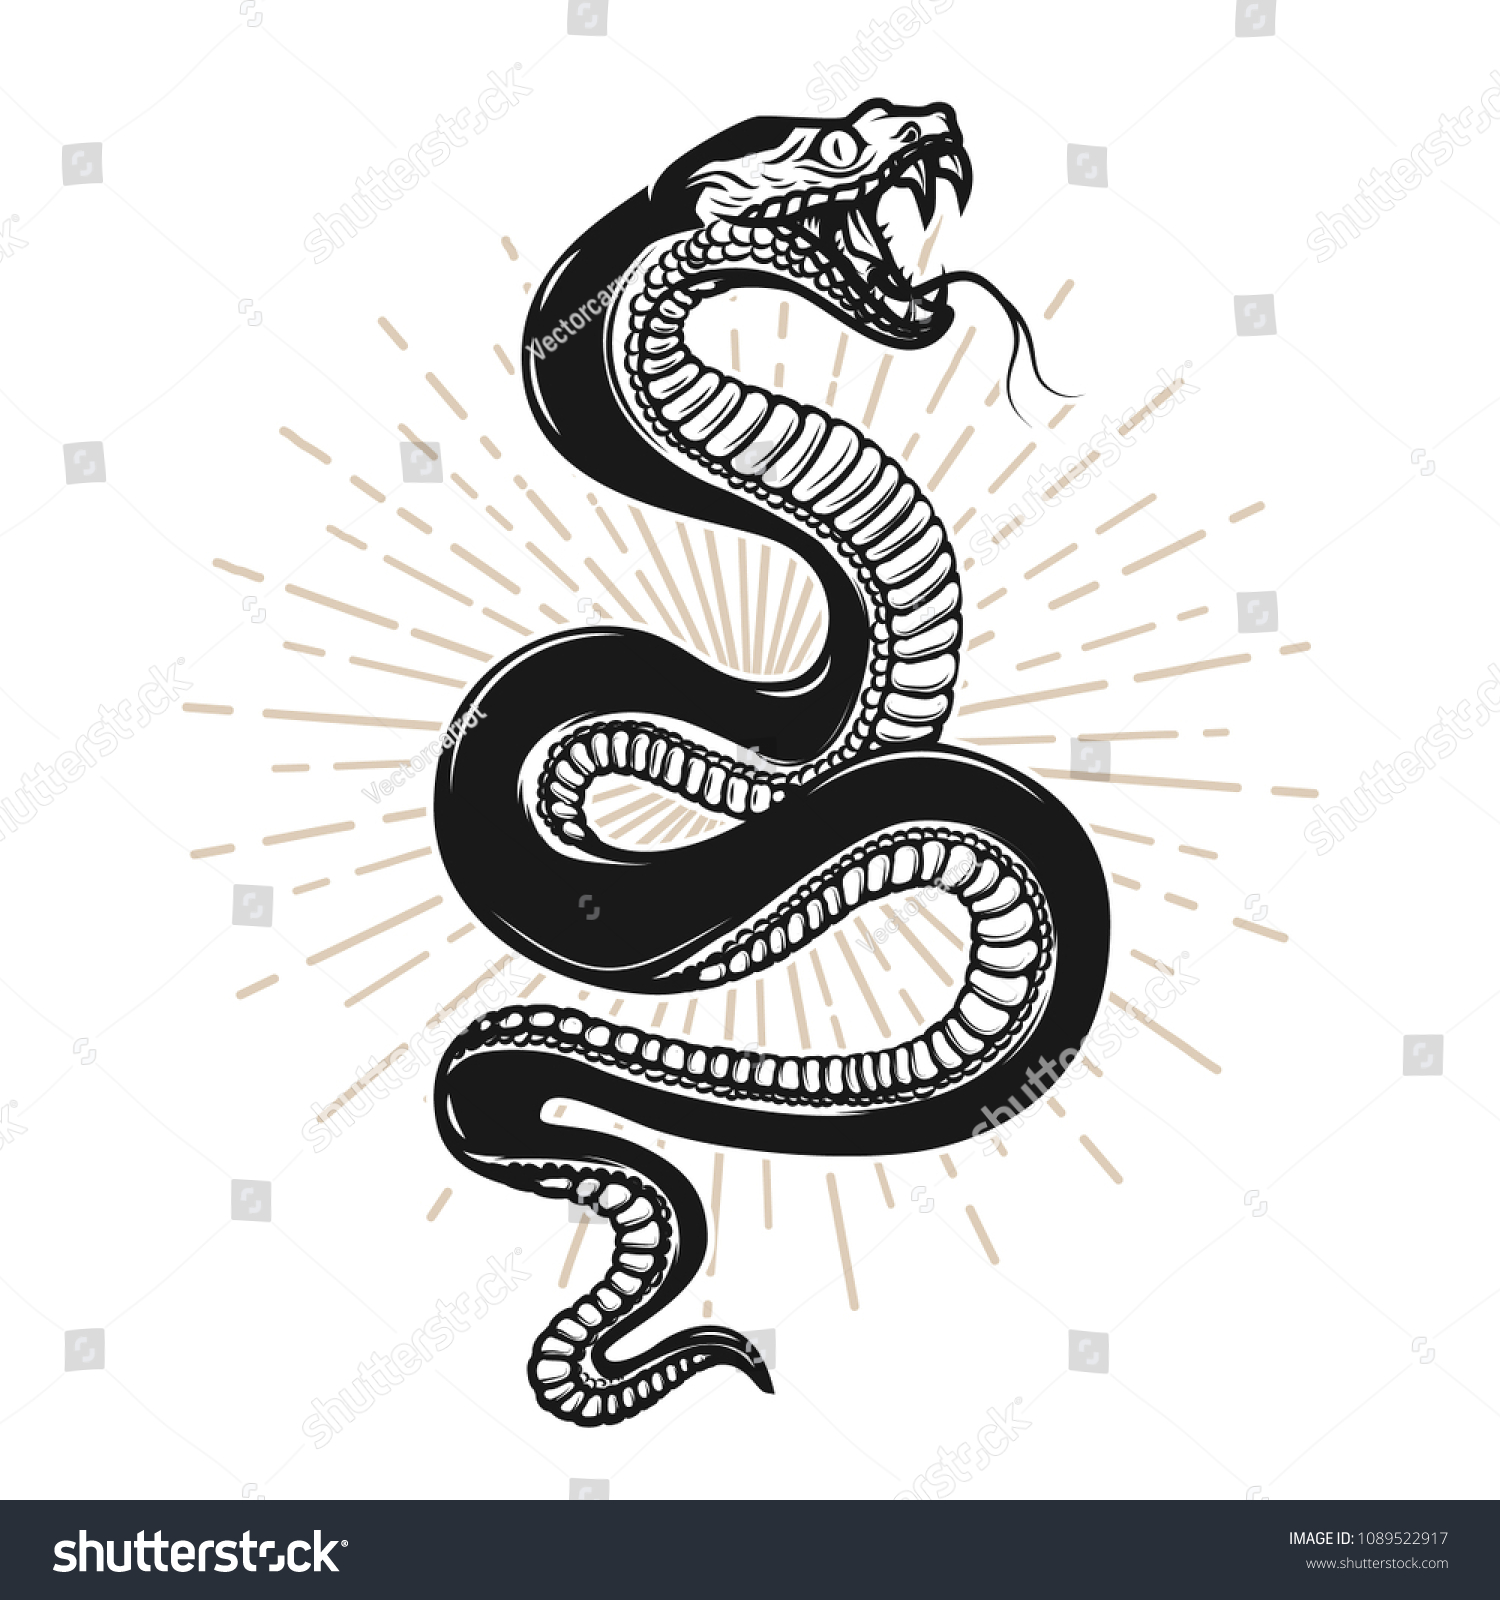 SVG of Snake illustration on white background. Design element for poster, t shirt, emblem, sign. Vector image svg